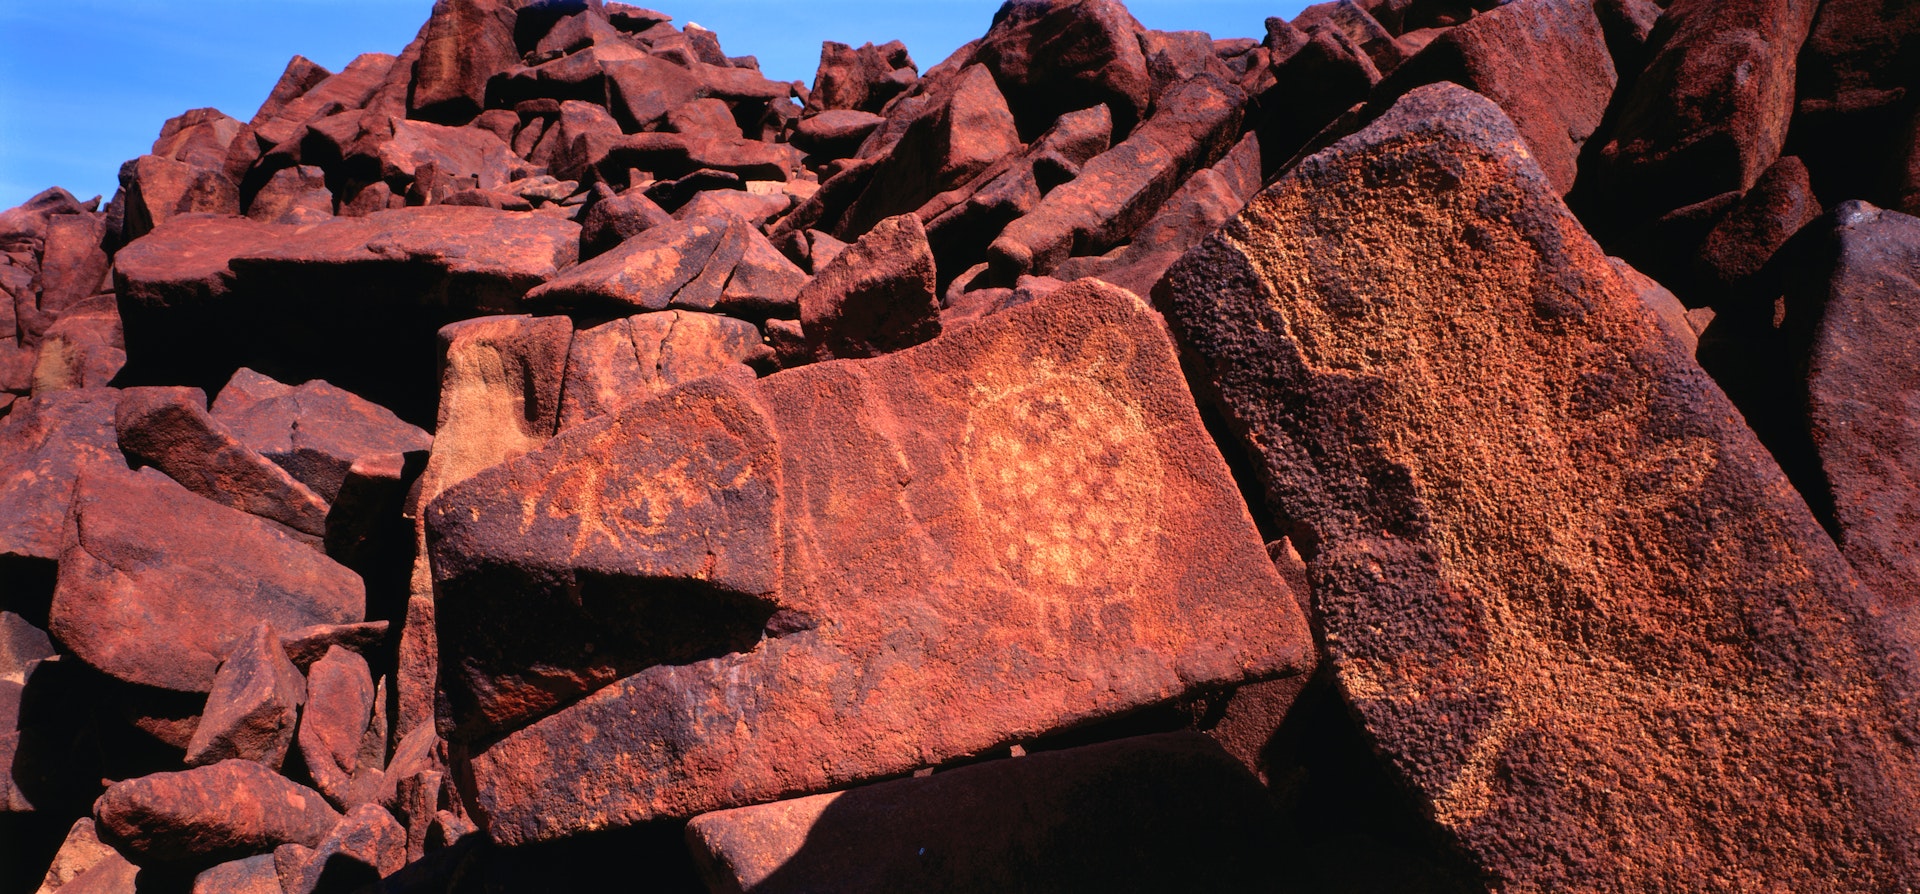 Aboriginal rock carvings